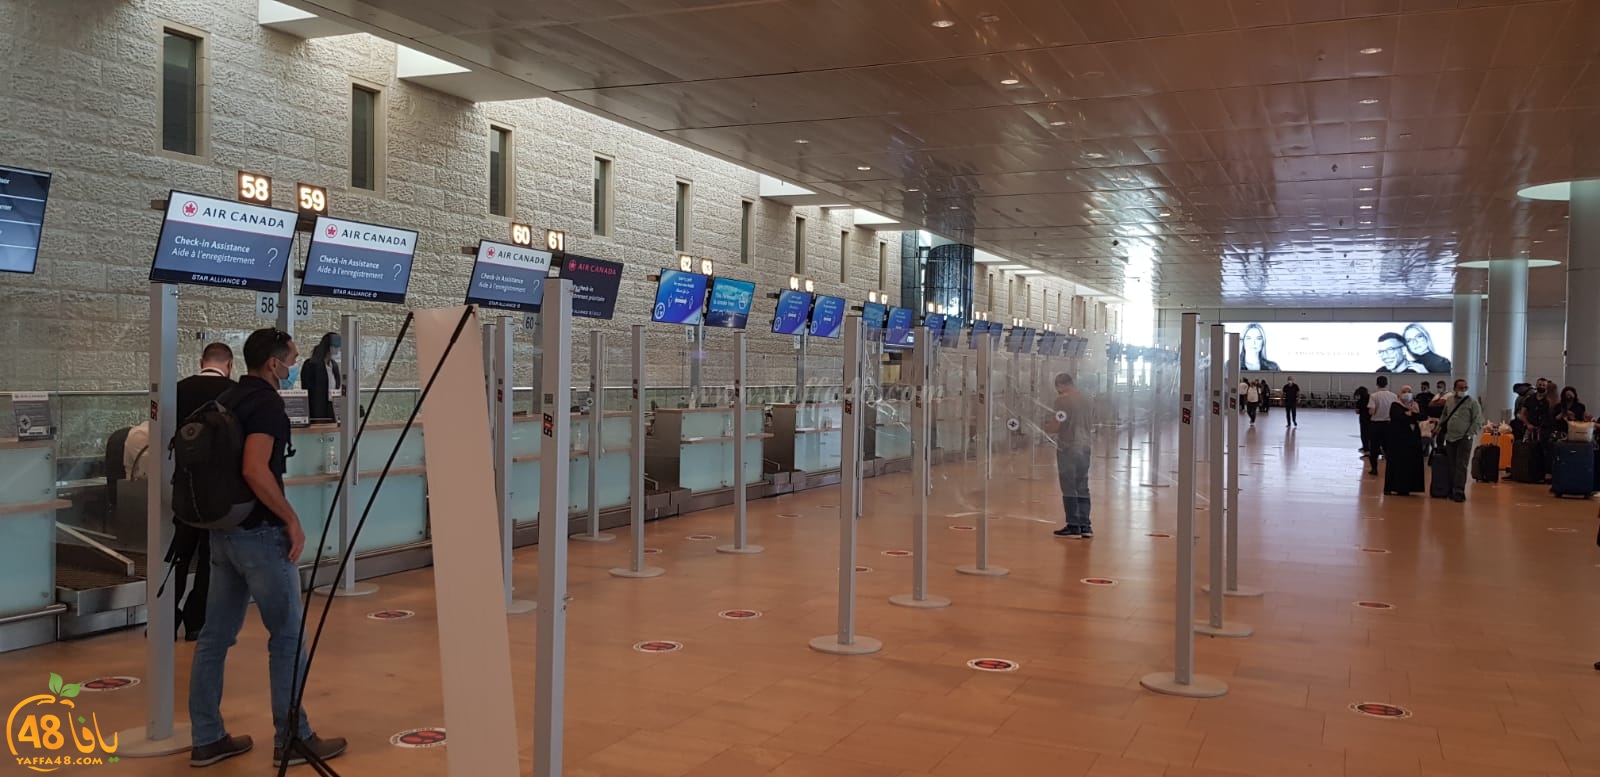  فيديو: فواصل للتباعد في مطار اللد بعد ازدياد عدد المسافرين العرب 